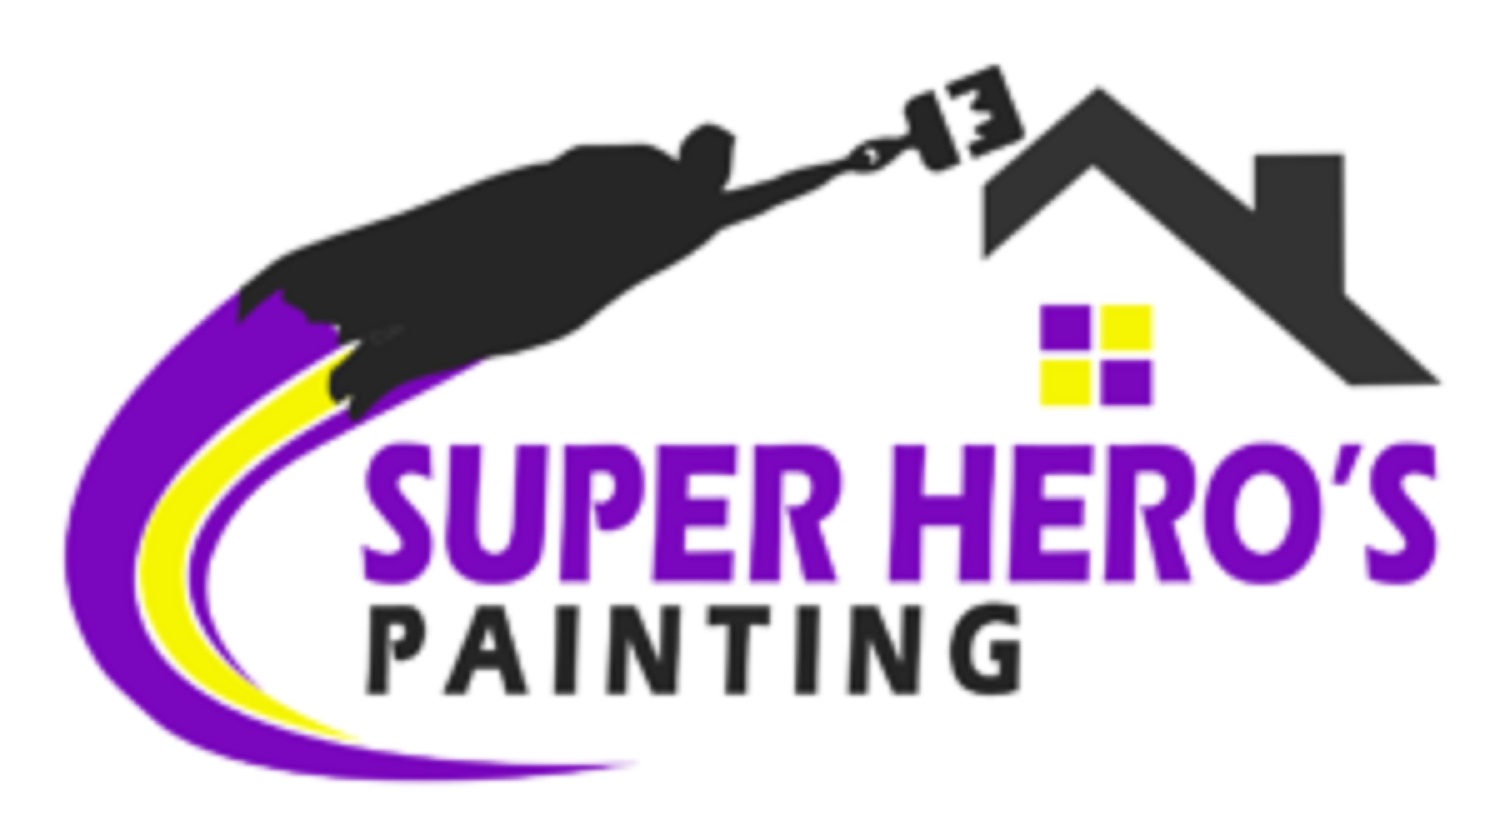 Super Hero's Painting